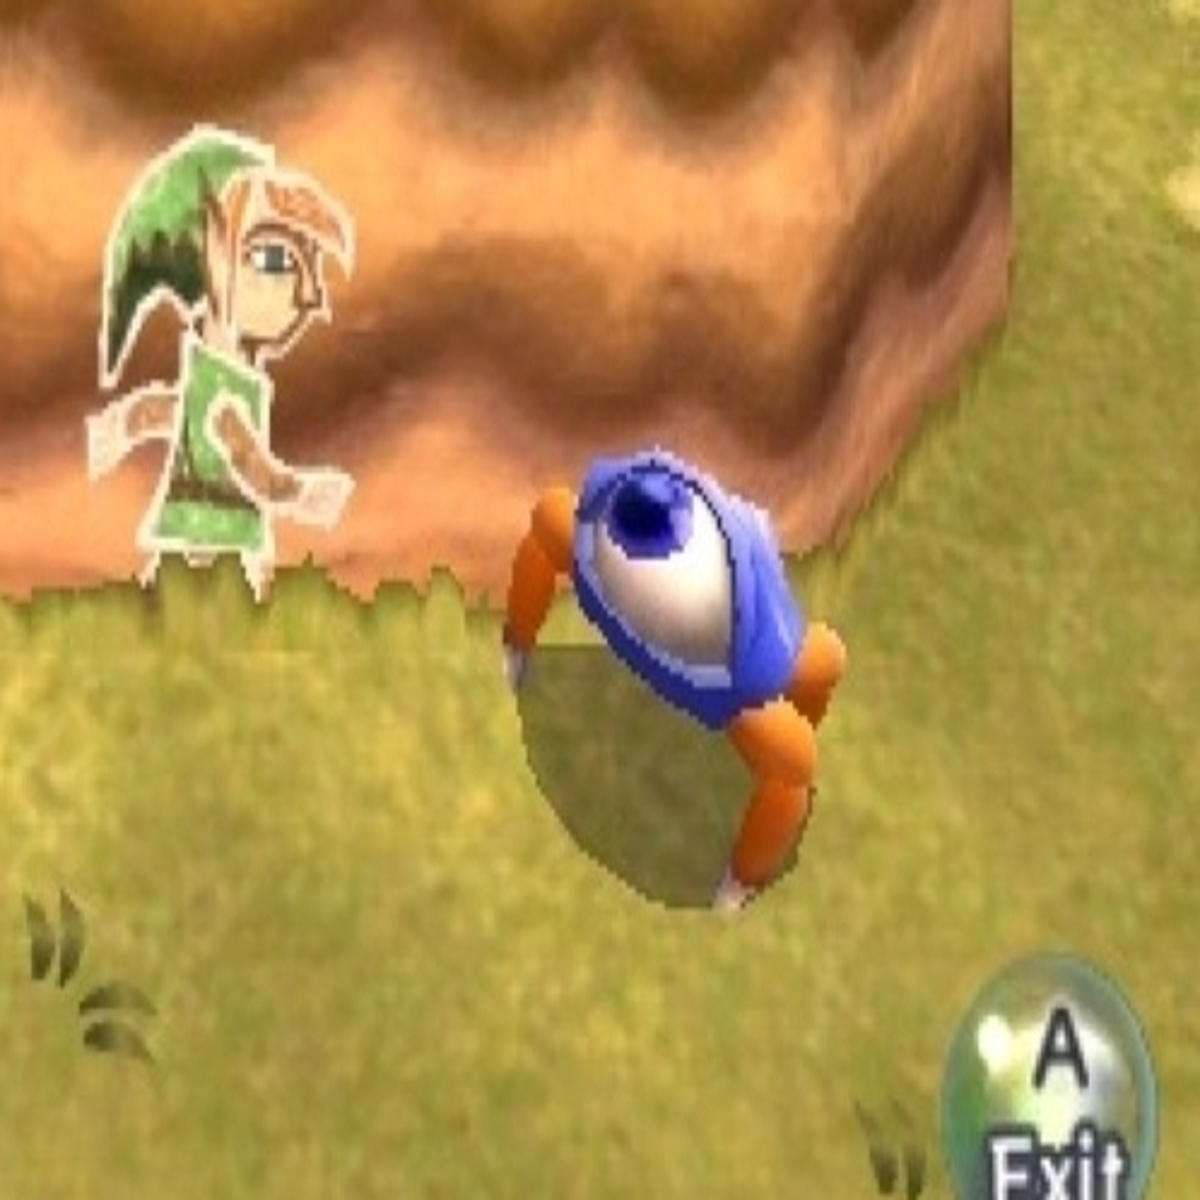  Nintendo Selects - Legend of Zelda: A Link Between Worlds  (Nintendo 3DS) : Video Games